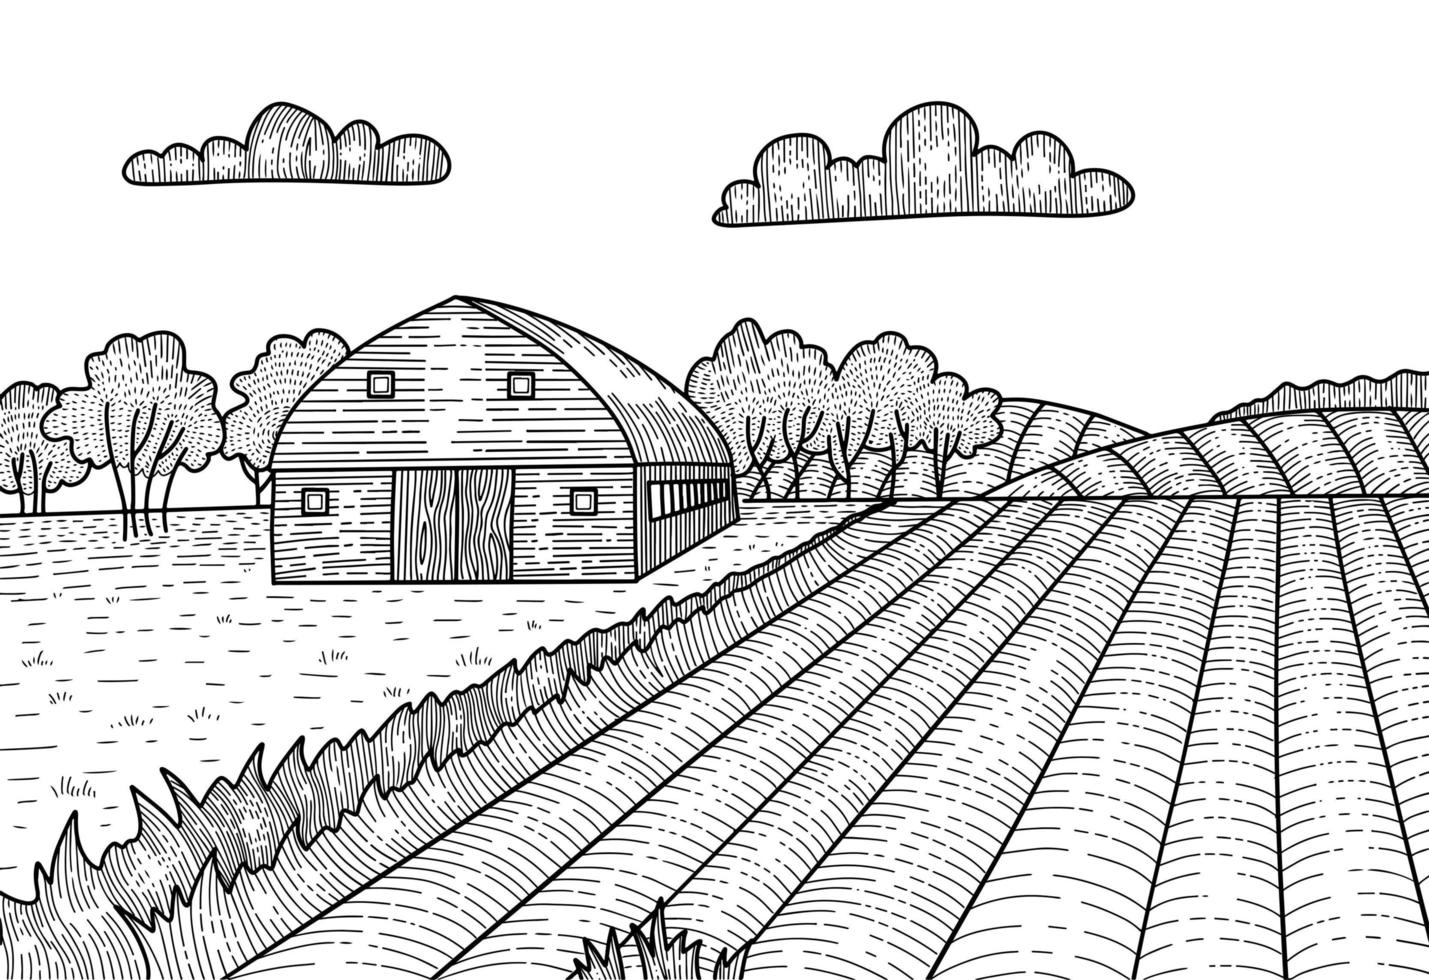 paisaje rural en estilo gráfico grabado. boceto dibujado a mano convertido en ilustración vectorial. campo con una granja, casa granero. vector